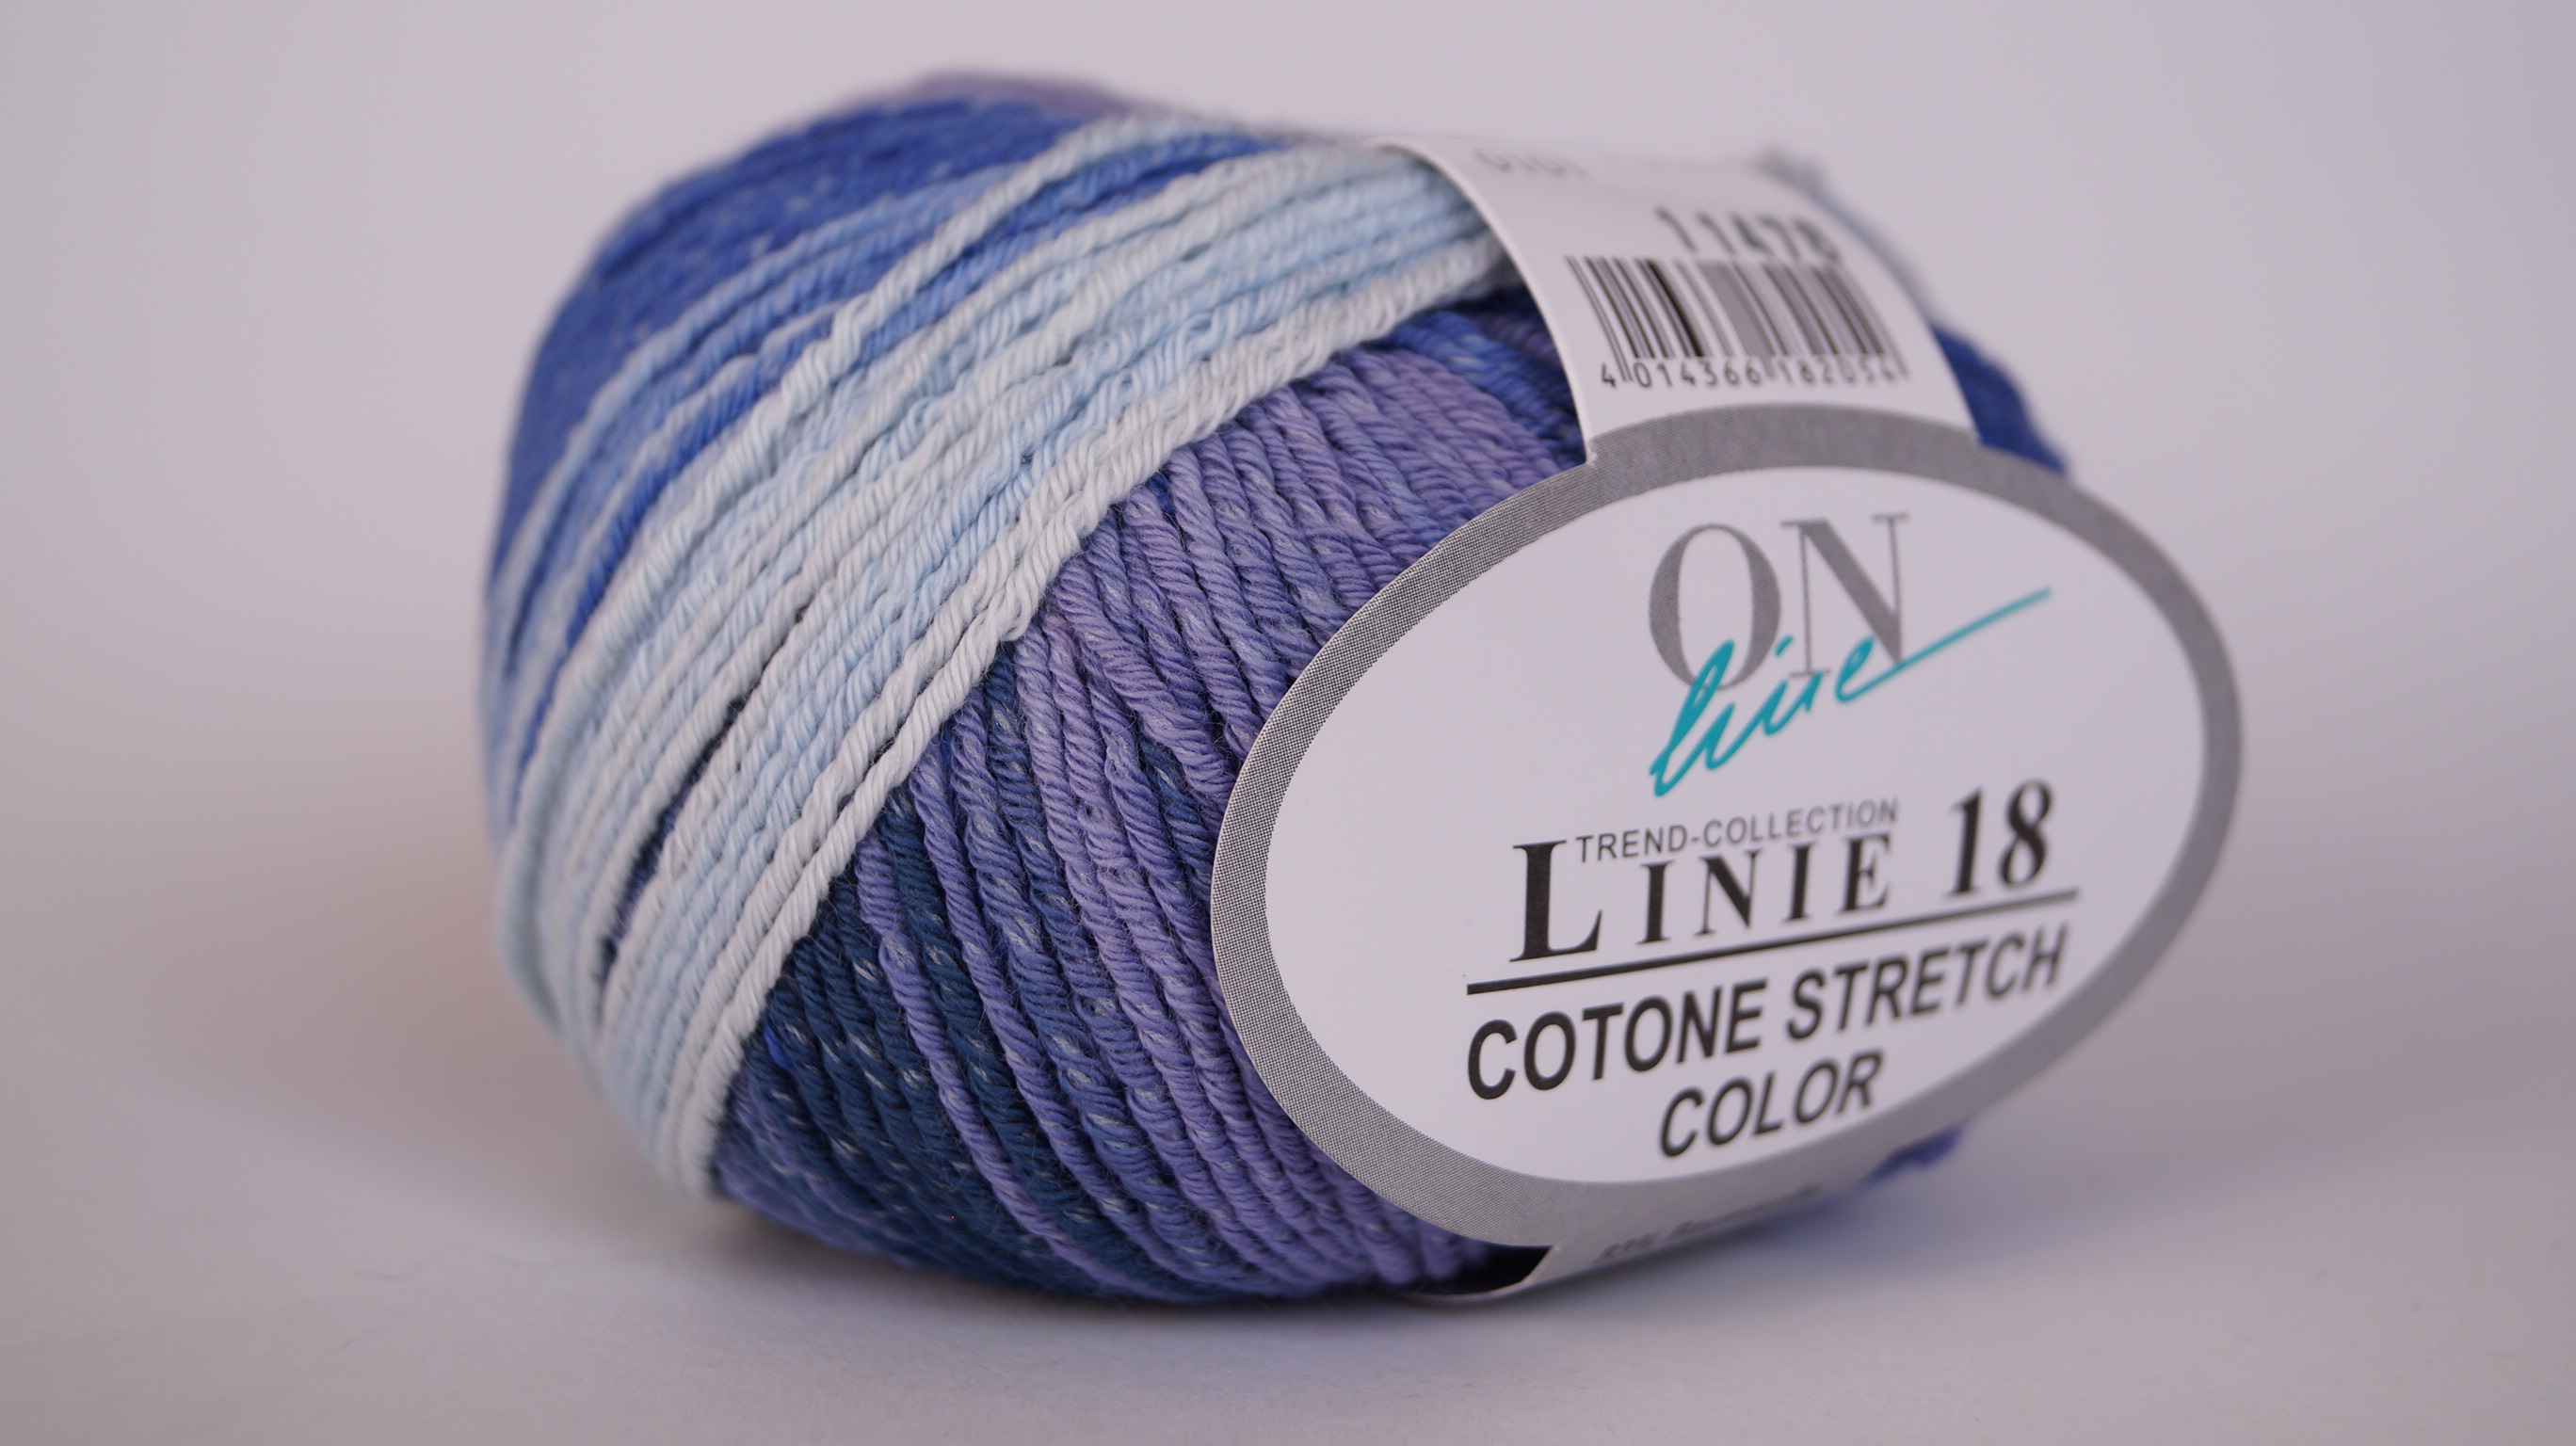 Linie 18 Cotone Stretch Color